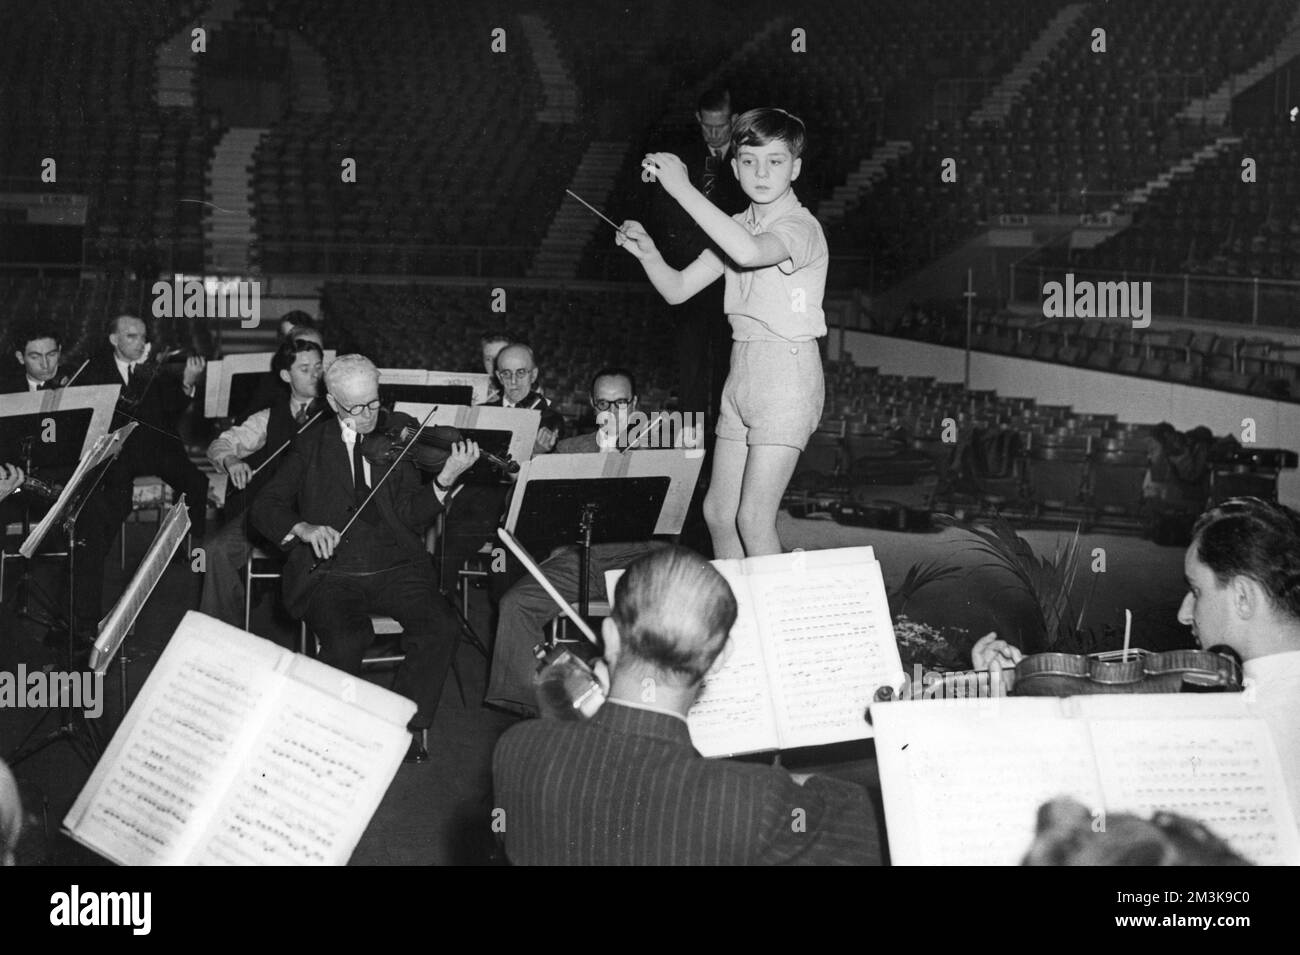 Pierino Gamba (B. c.1937) ein Wunderkind, das schon in jungen Jahren Orchester leitete und später ein berühmter Dirigent wurde Datum: 1940er Stockfoto